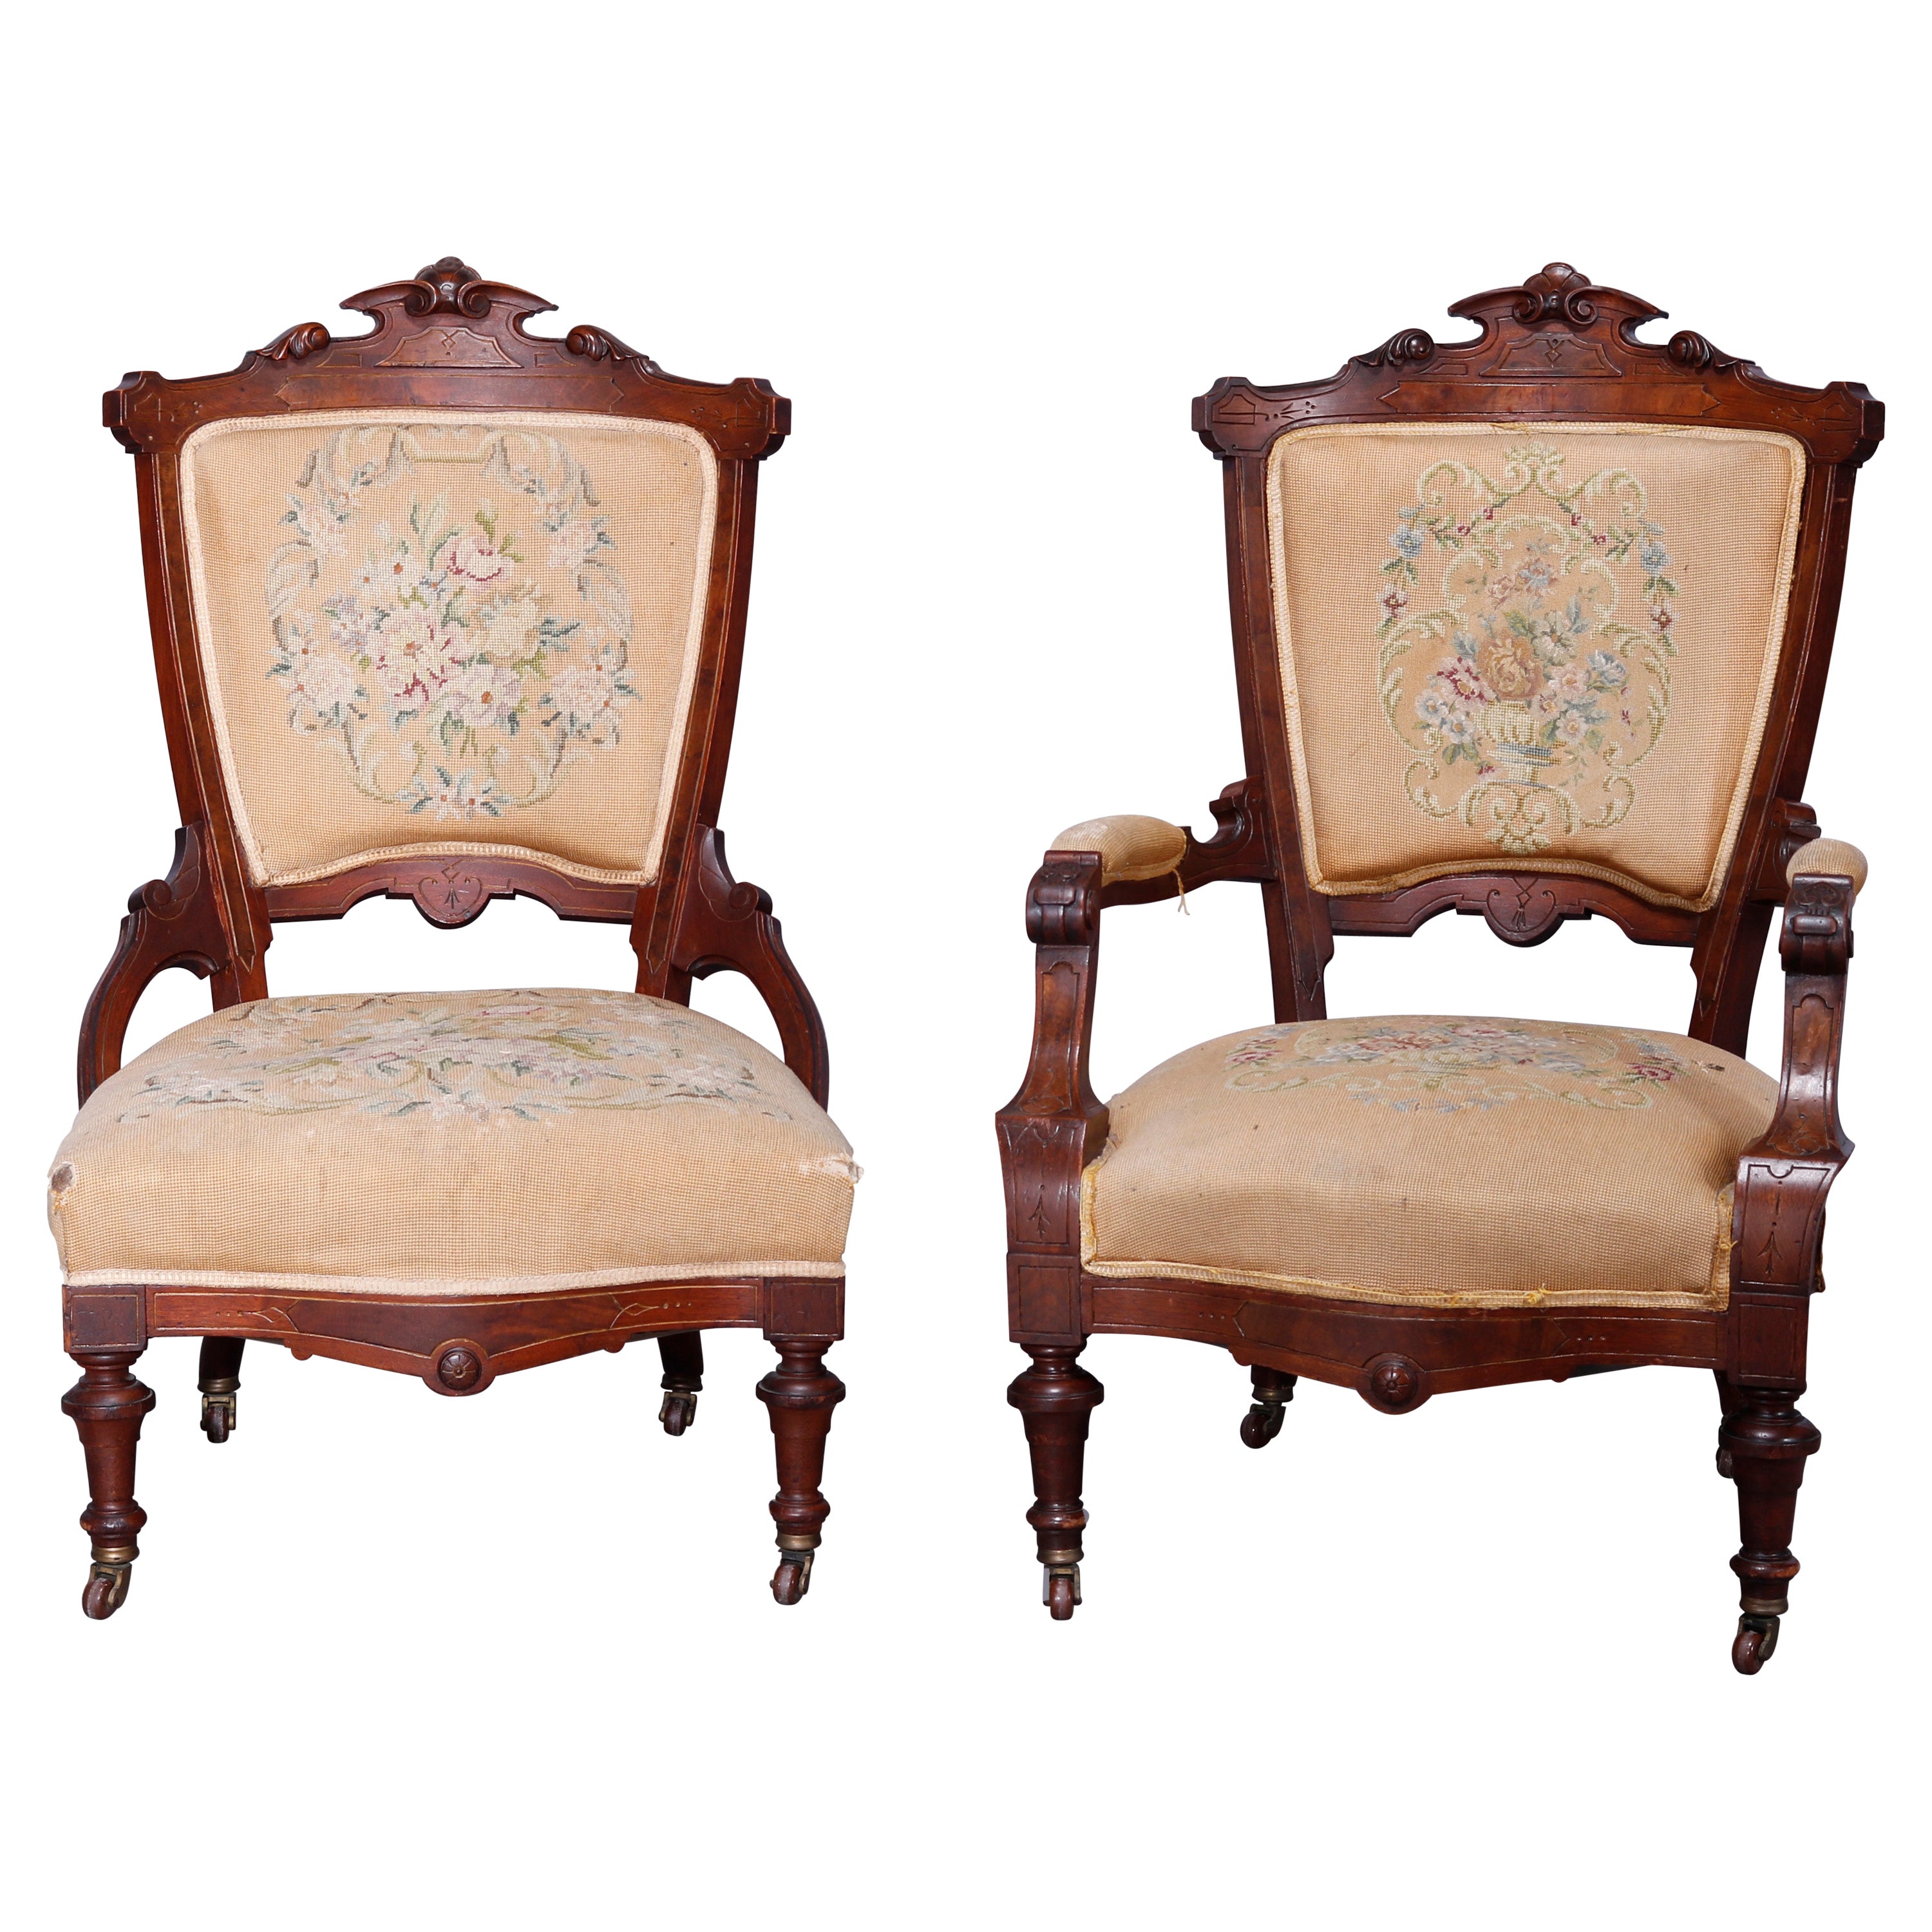 Antique Renaissance Revival Walnut, Burl & Needlepoint Parlor Chairs, c1890 For Sale